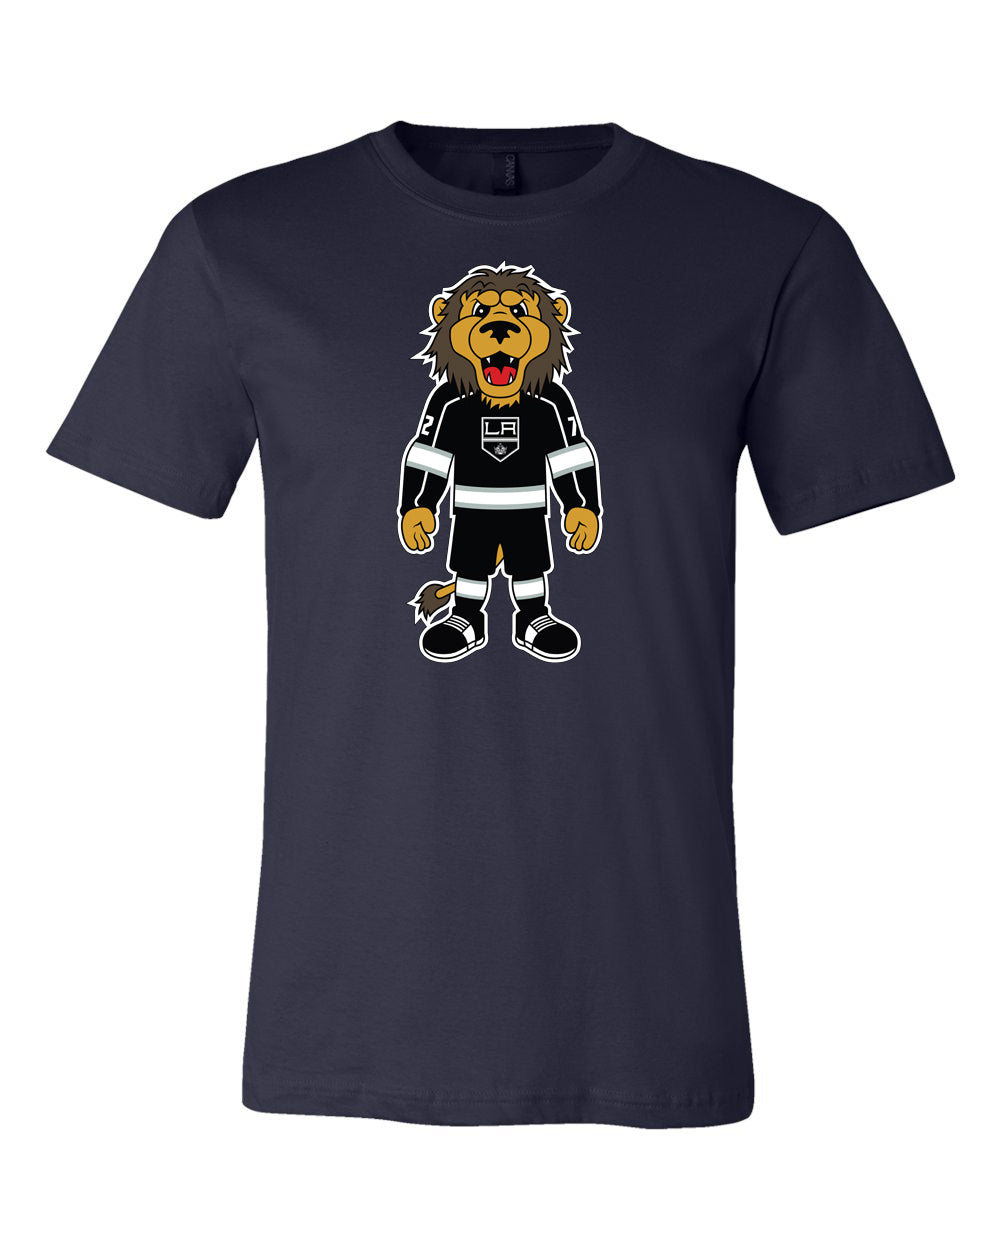 Los Angeles Kings Mascot Shirt, Bailey Mascot Shirt 🏒🏆